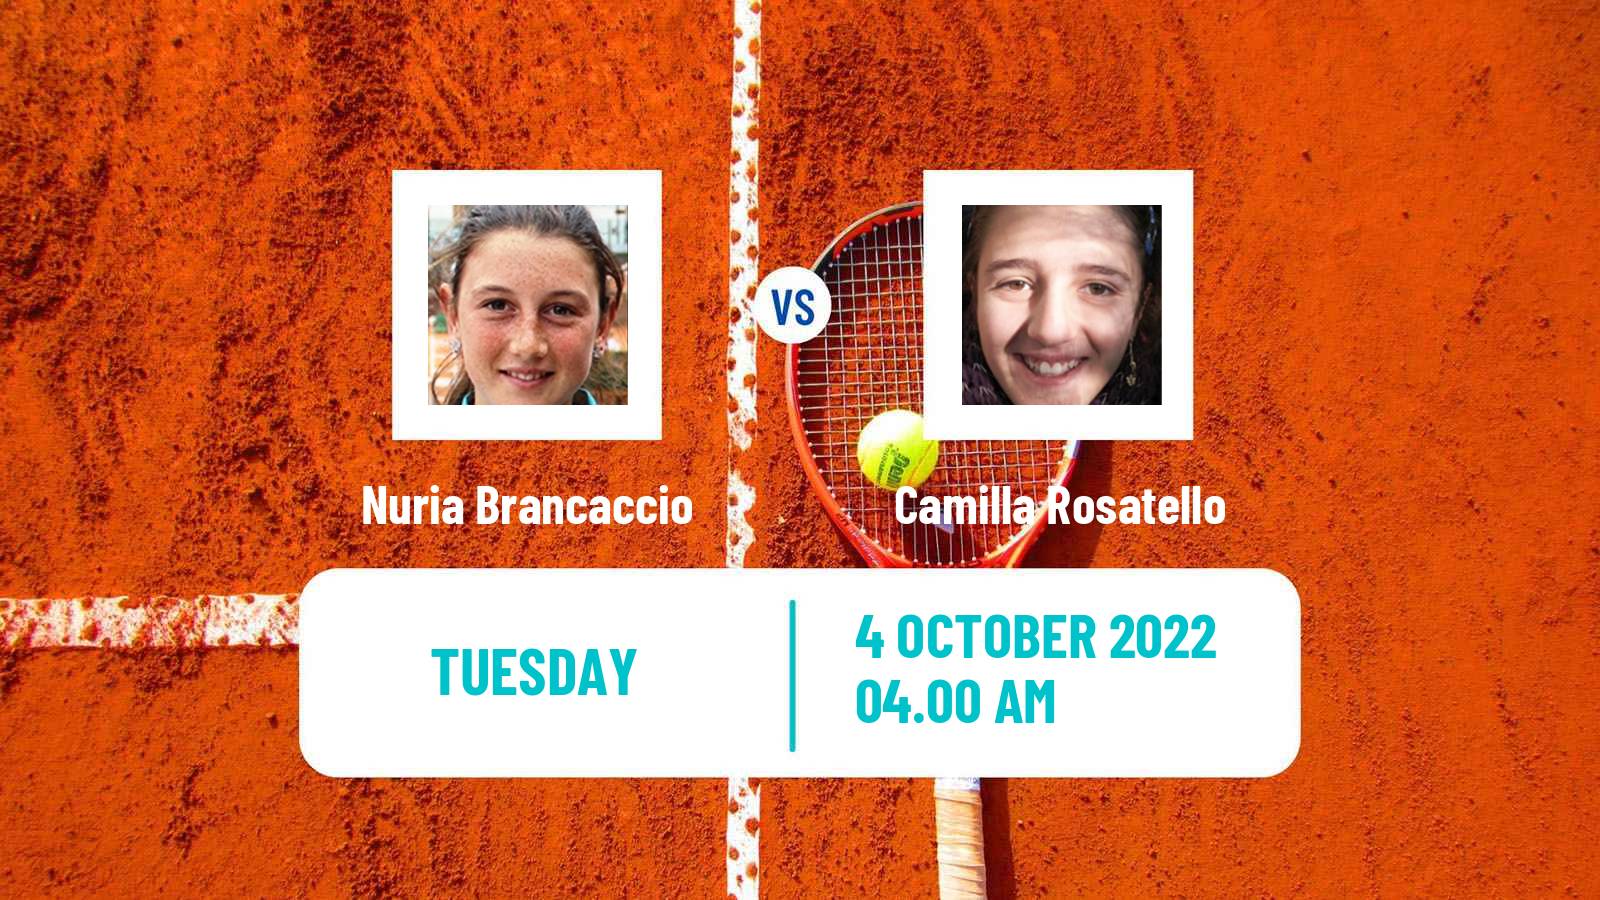 Tennis ITF Tournaments Nuria Brancaccio - Camilla Rosatello